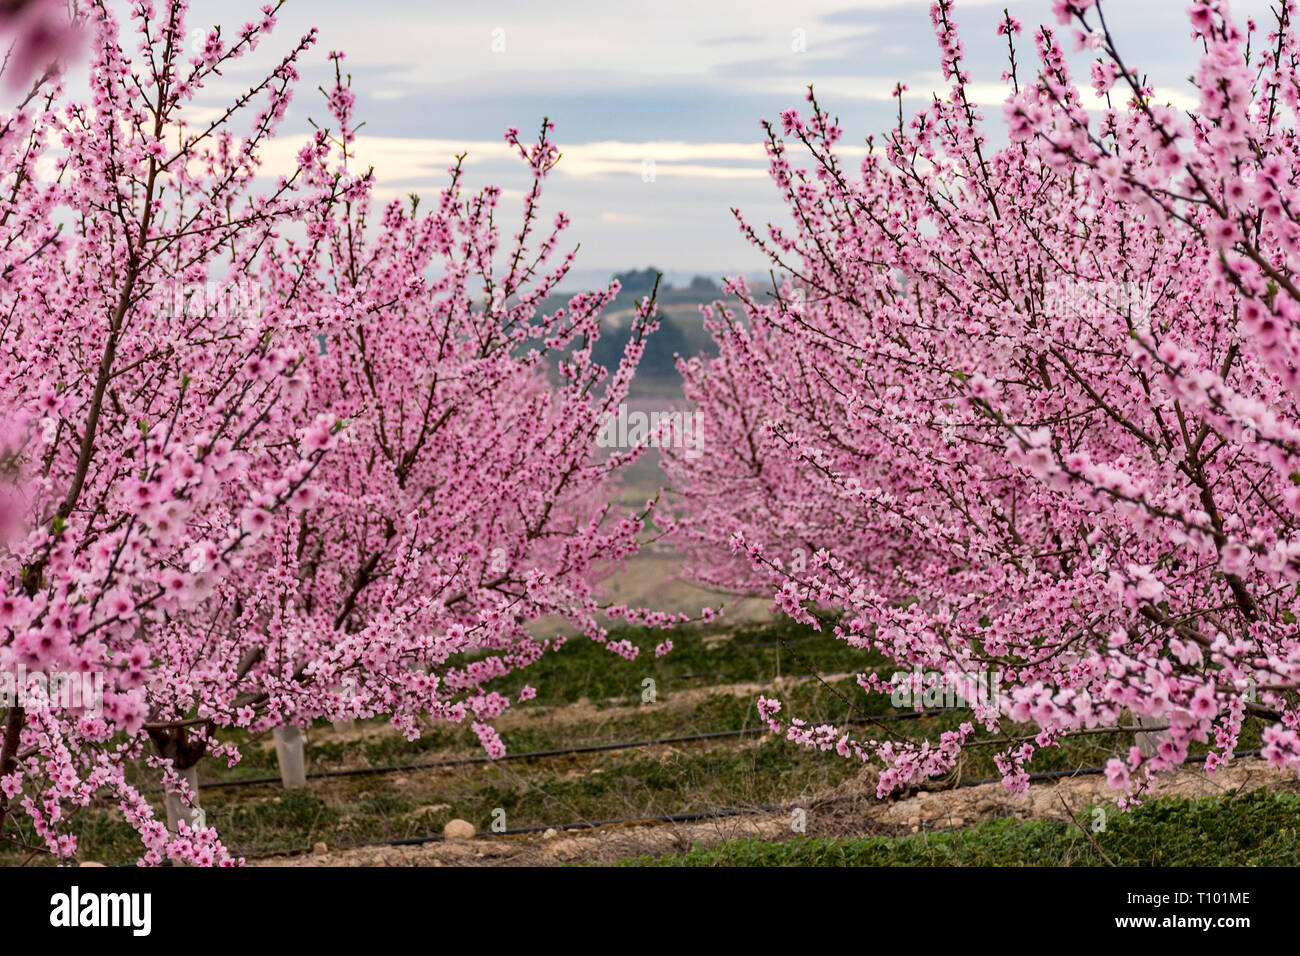 Campo con hileras de árboles de durazno.con ramas llena de delicadas flores rosas al amanecer. Ambiente tranquilo. Misterioso. , Aitona Alpicat. Foto de stock